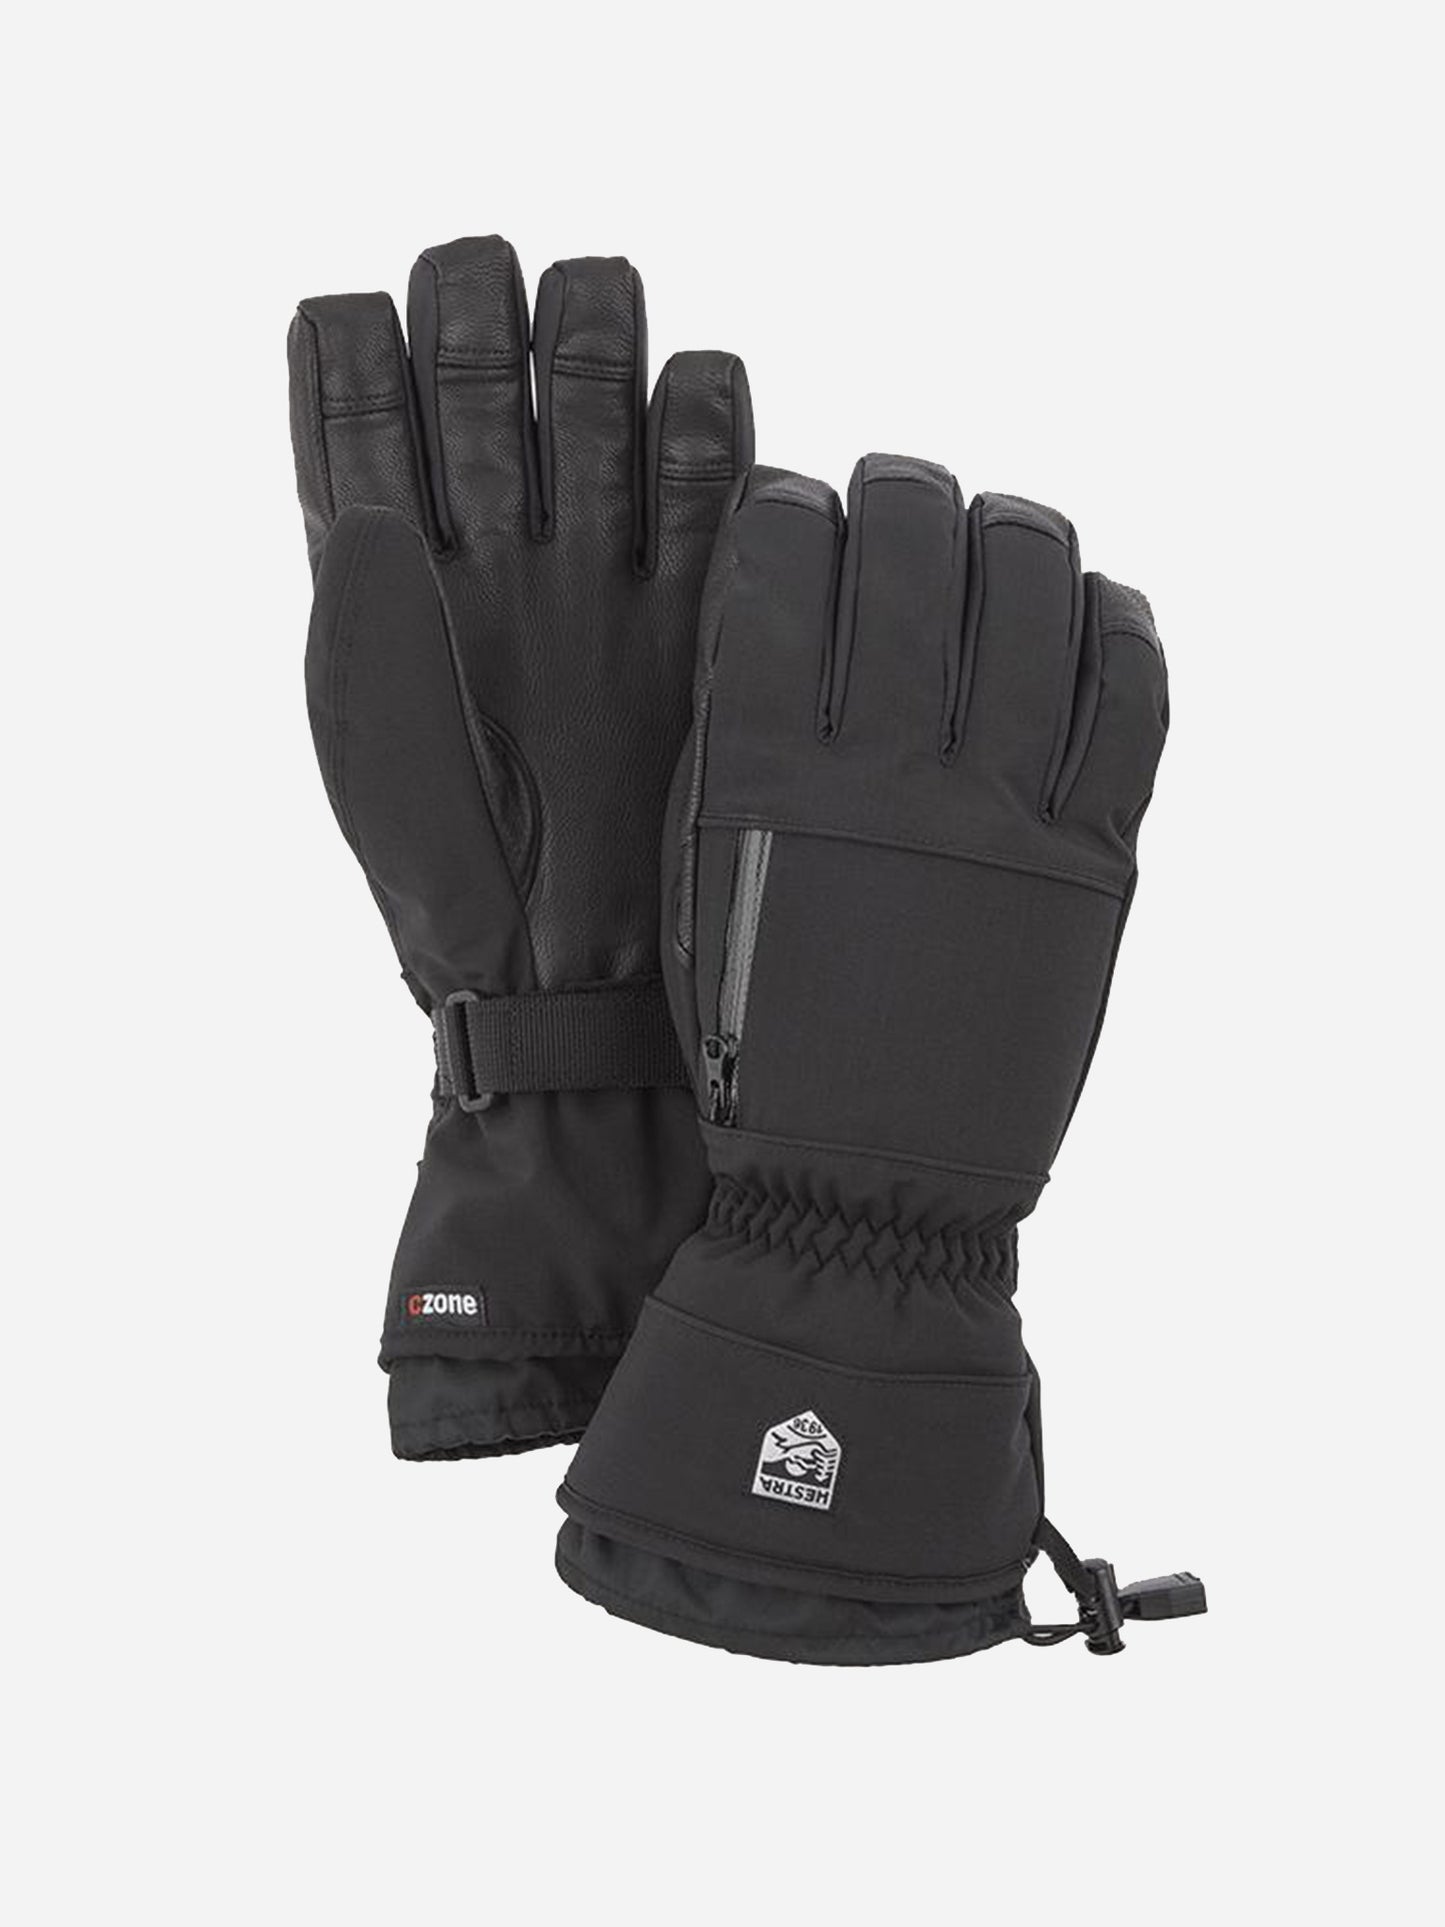 Hestra Men's Czone Pointer 5-Finger Gloves